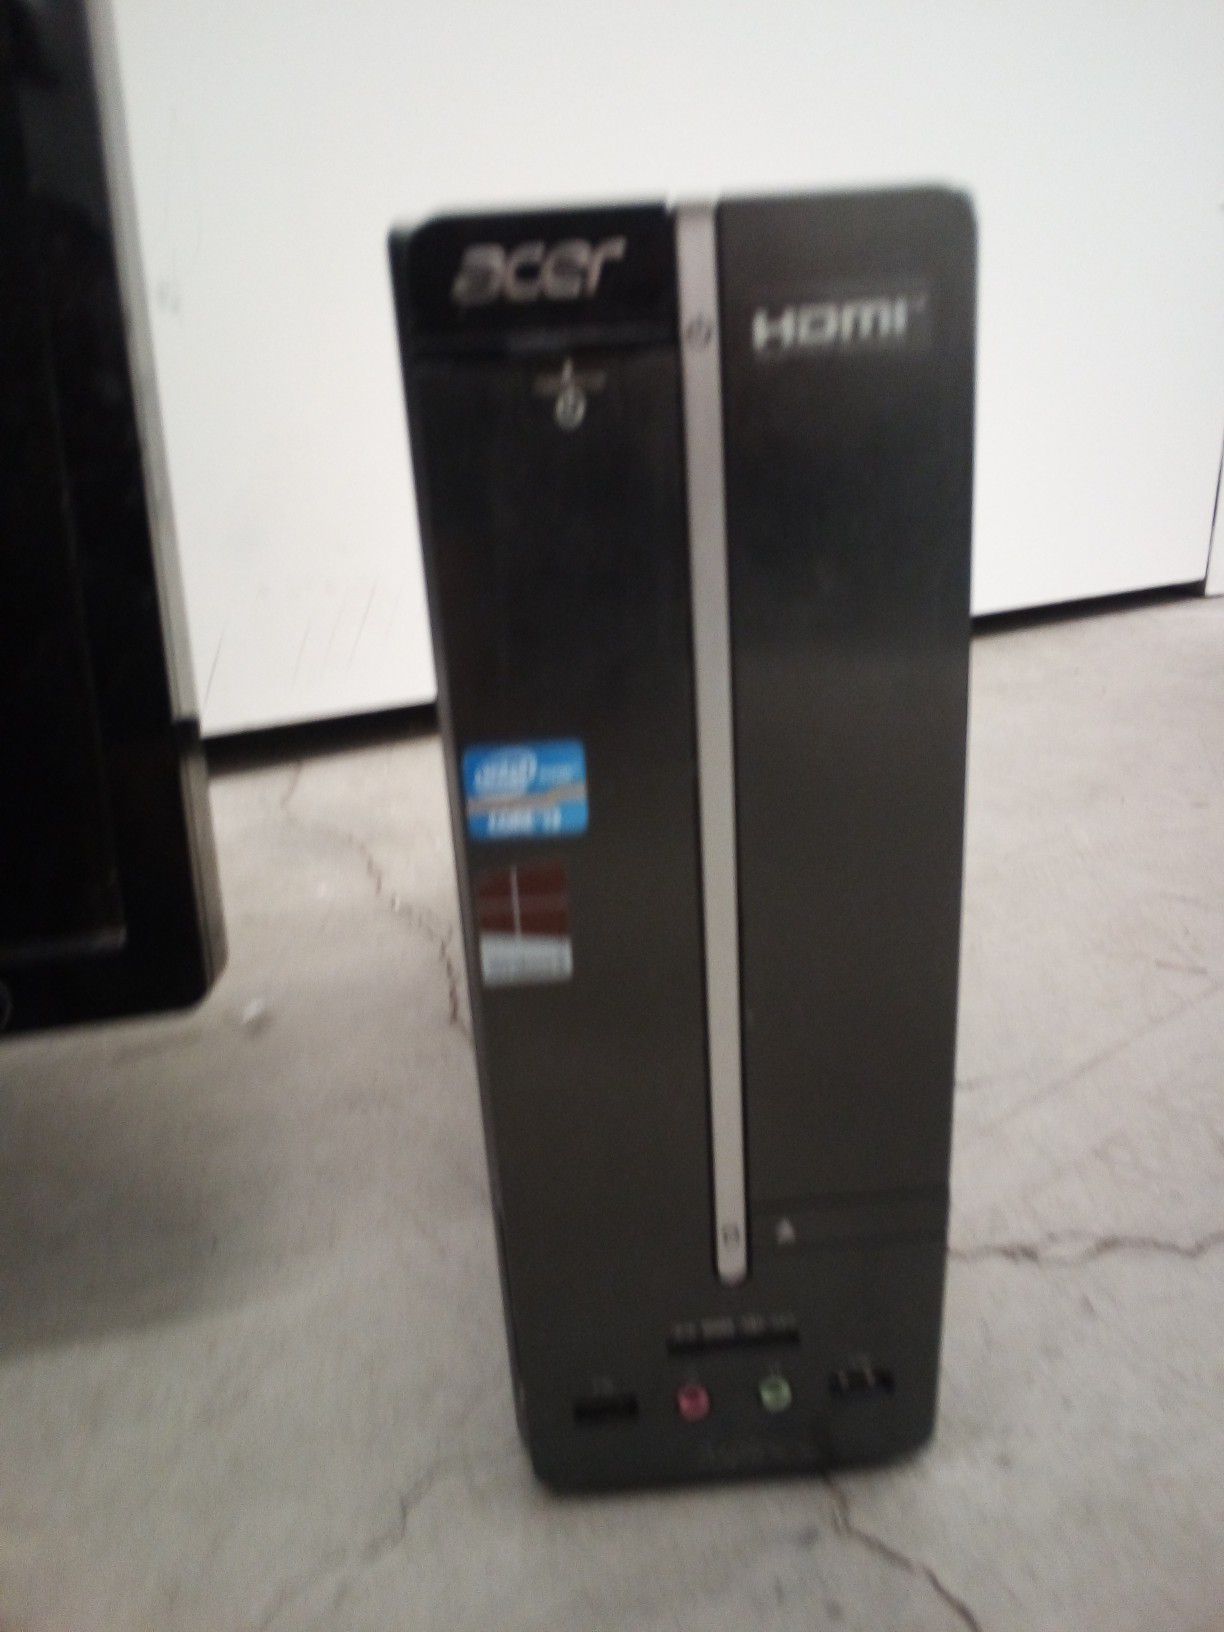 Acer Aspire XC600 compact desktop computer